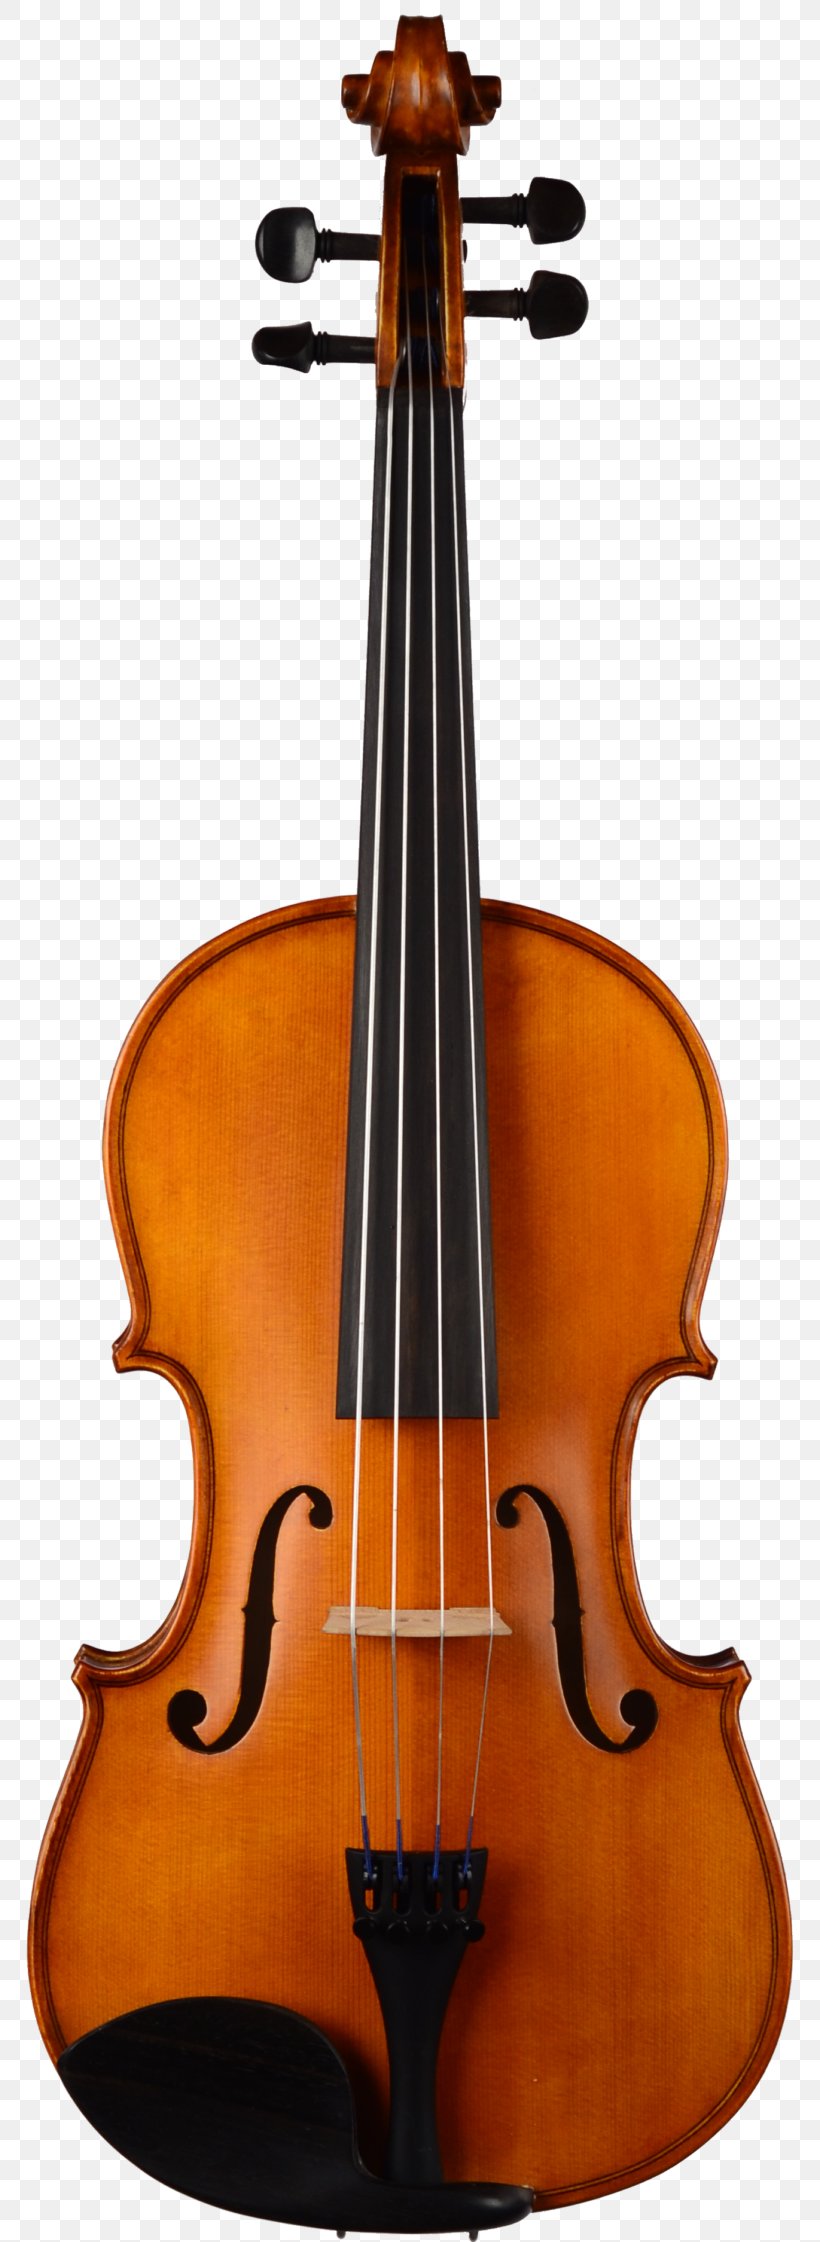 Yamaha V3 Student Violin Yamaha Violin 4/4 V20SG Violins 4/4 Violins Musical Instruments Yamaha Corporation, PNG, 768x2242px, Violin, Bass Guitar, Bass Violin, Bowed String Instrument, Cello Download Free